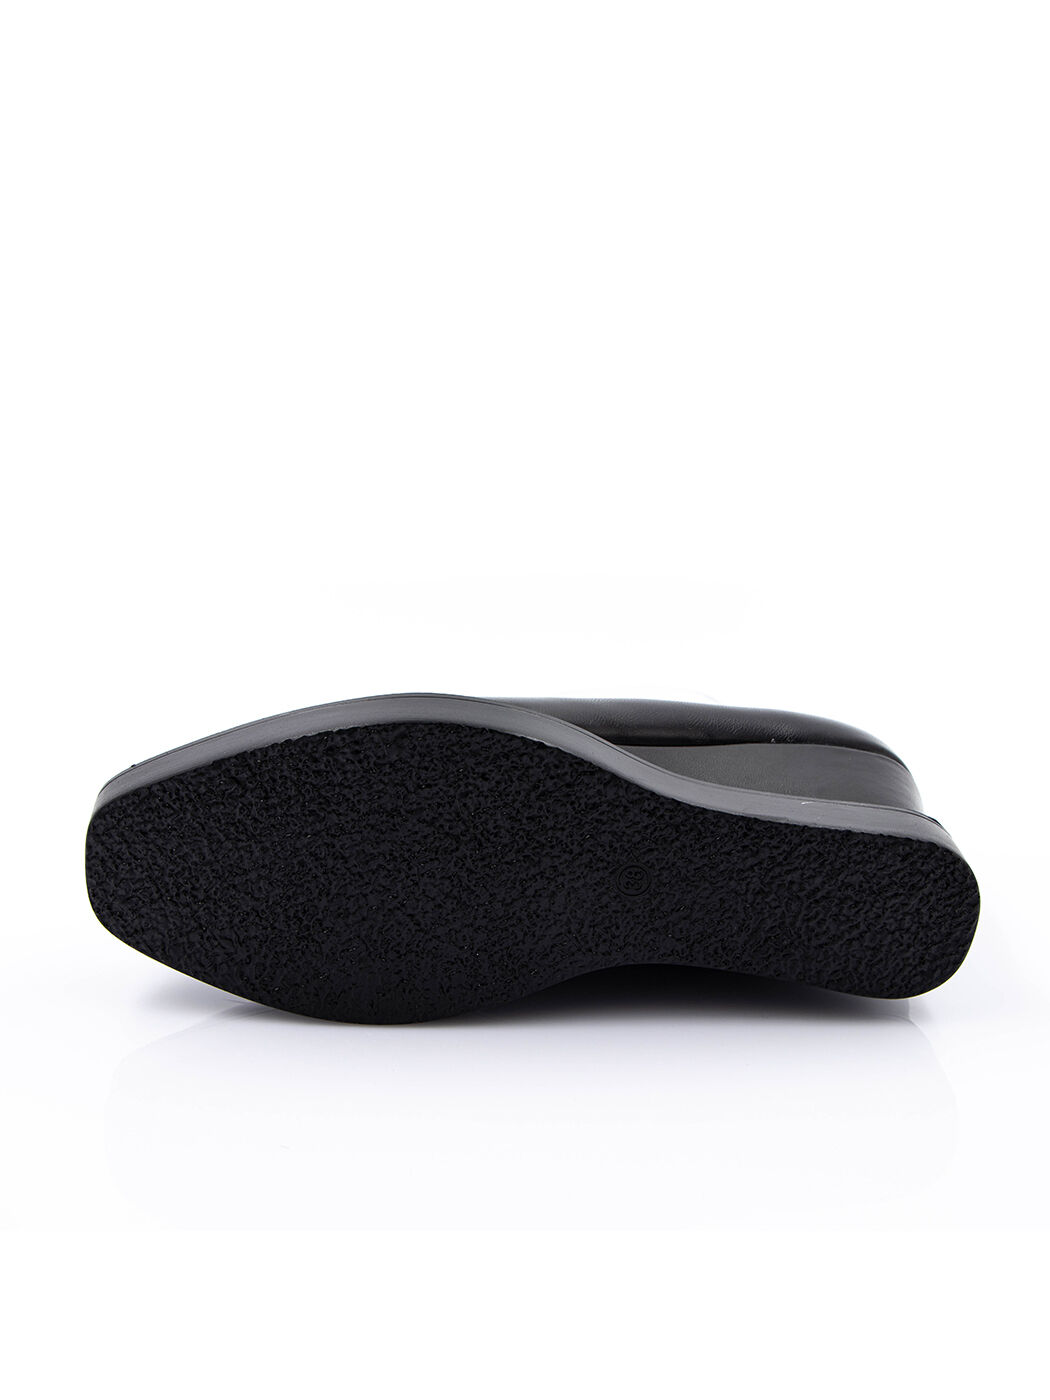 Туфли женские черные экокожа каблук устойчивый демисезон от производителя 1M вид 0